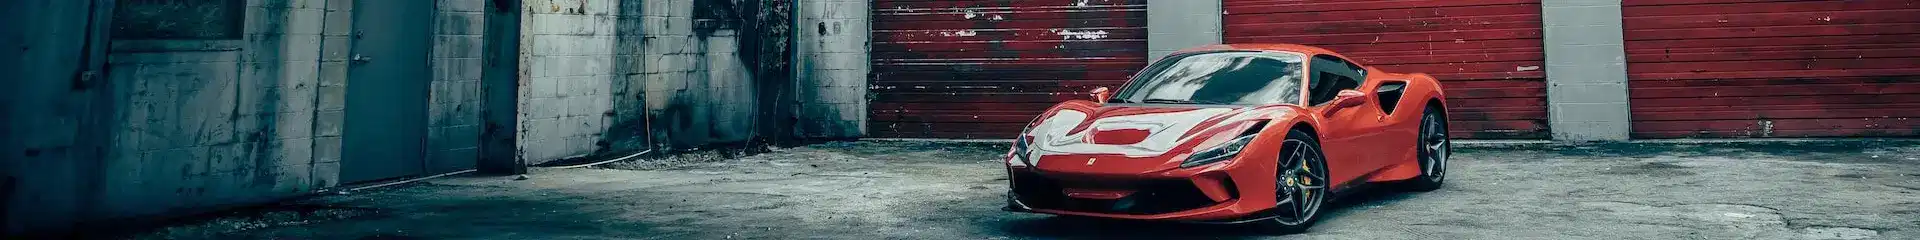 Red Ferrari Car in Garage